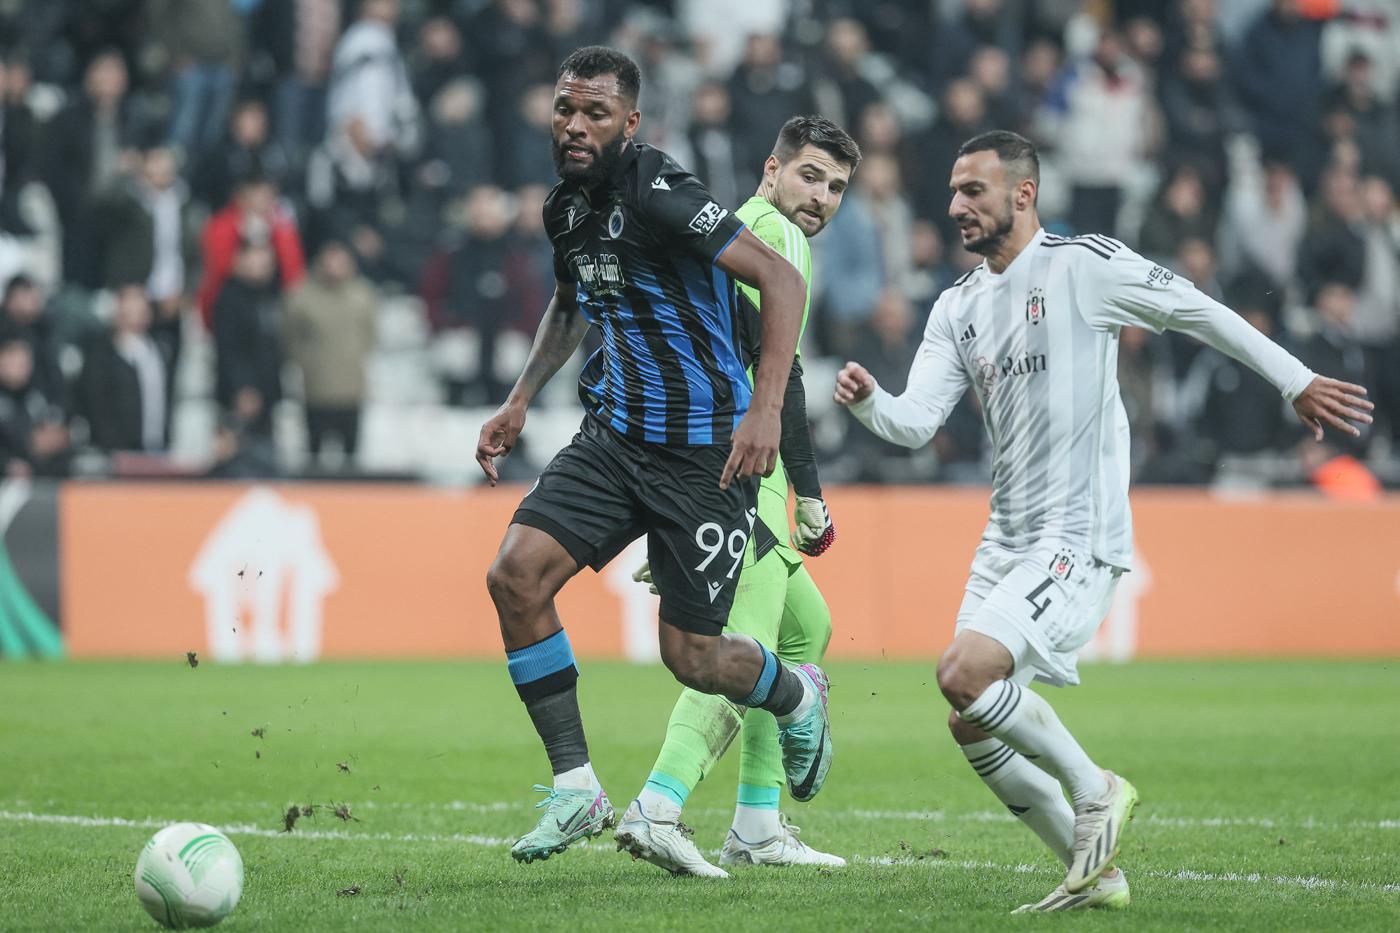 Beşiktaş vs. Lugano: Extended Highlights